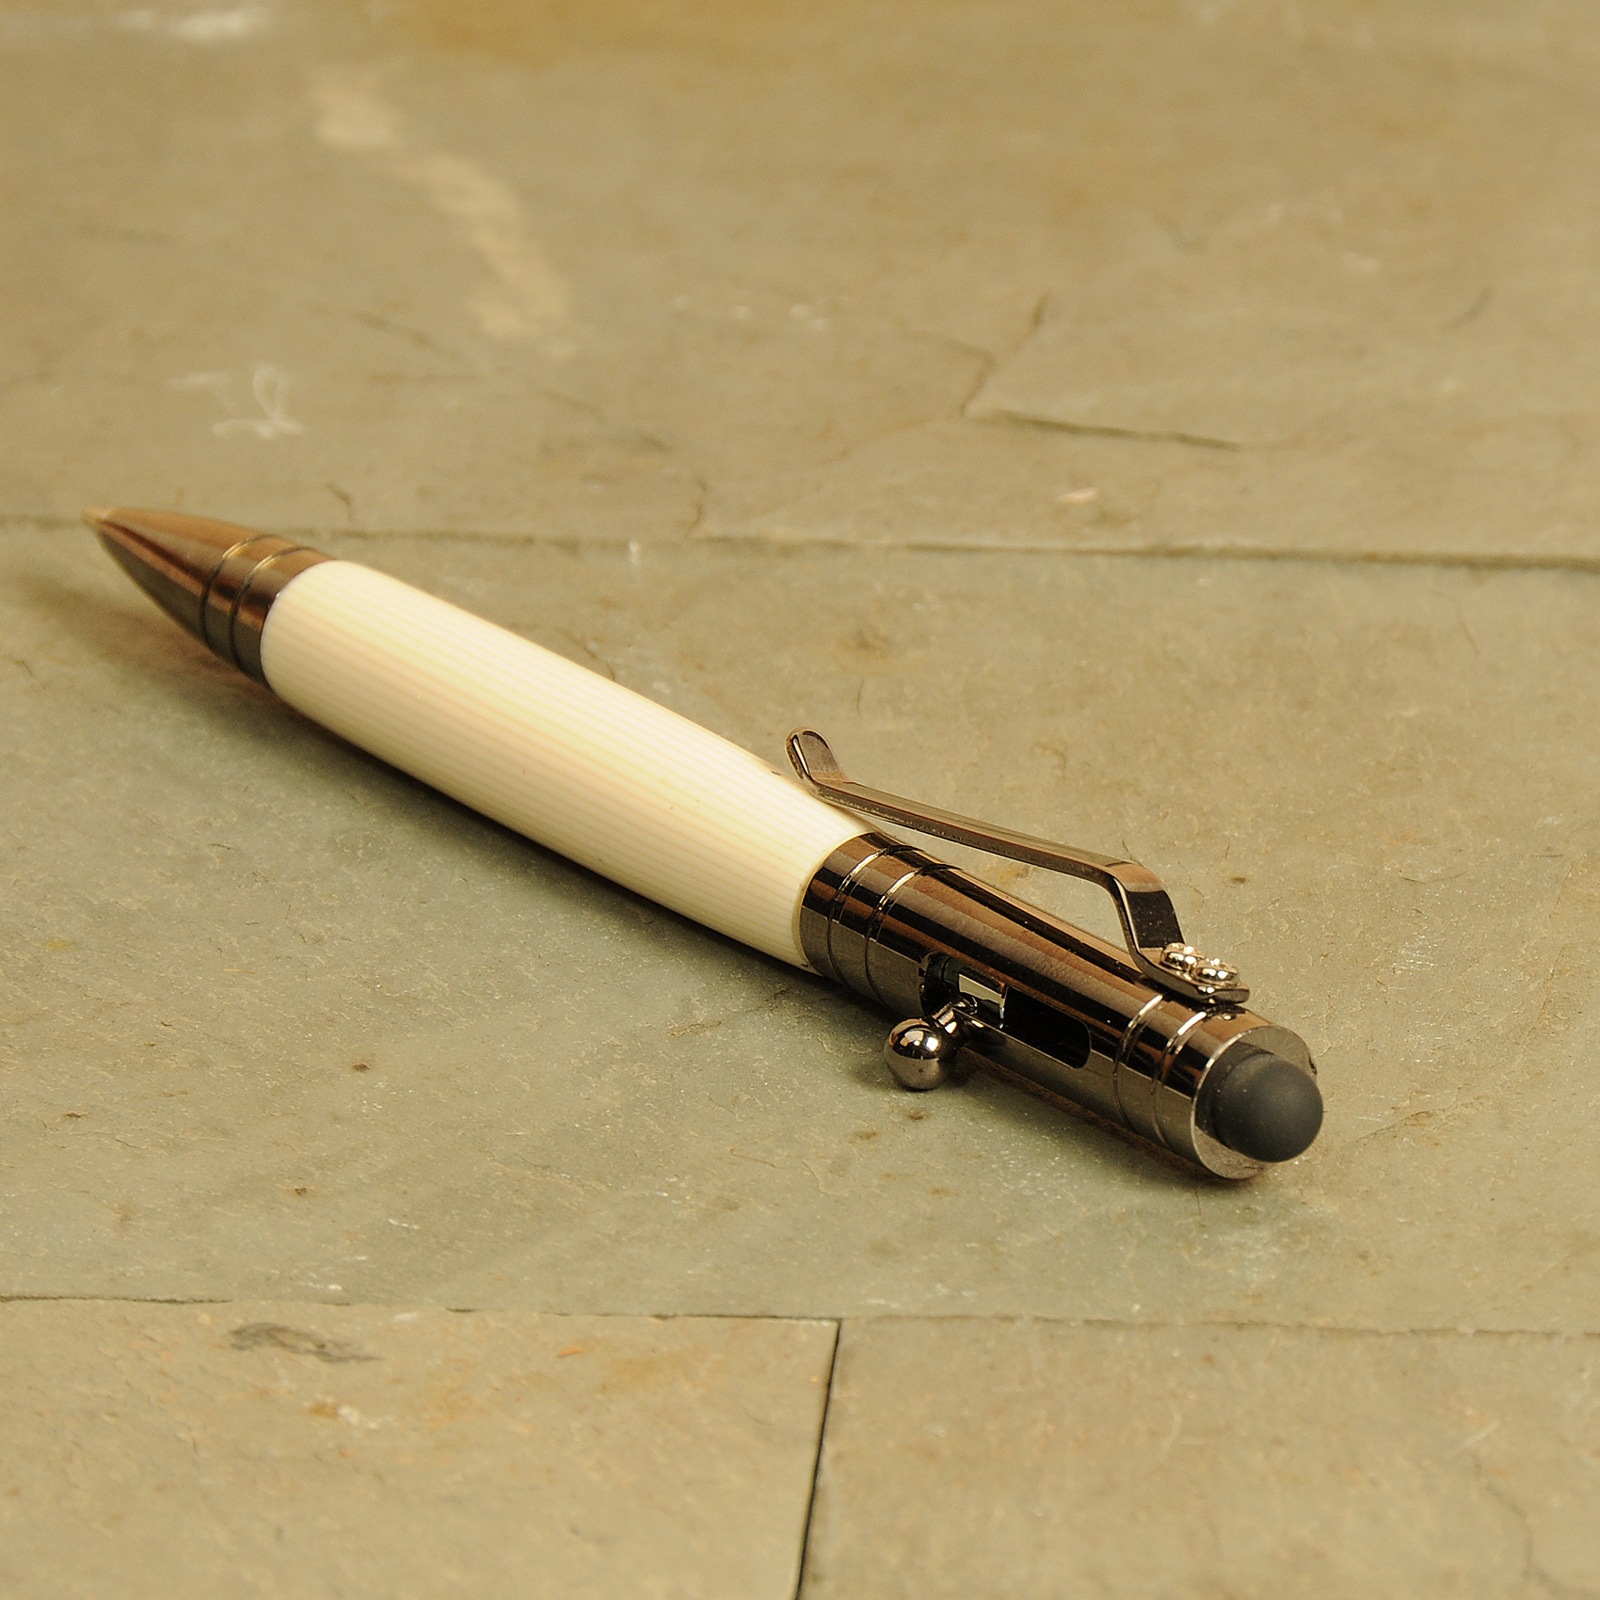 Bolt Action Ceramic Pen Kit Starter Set - 5 Pen Kits